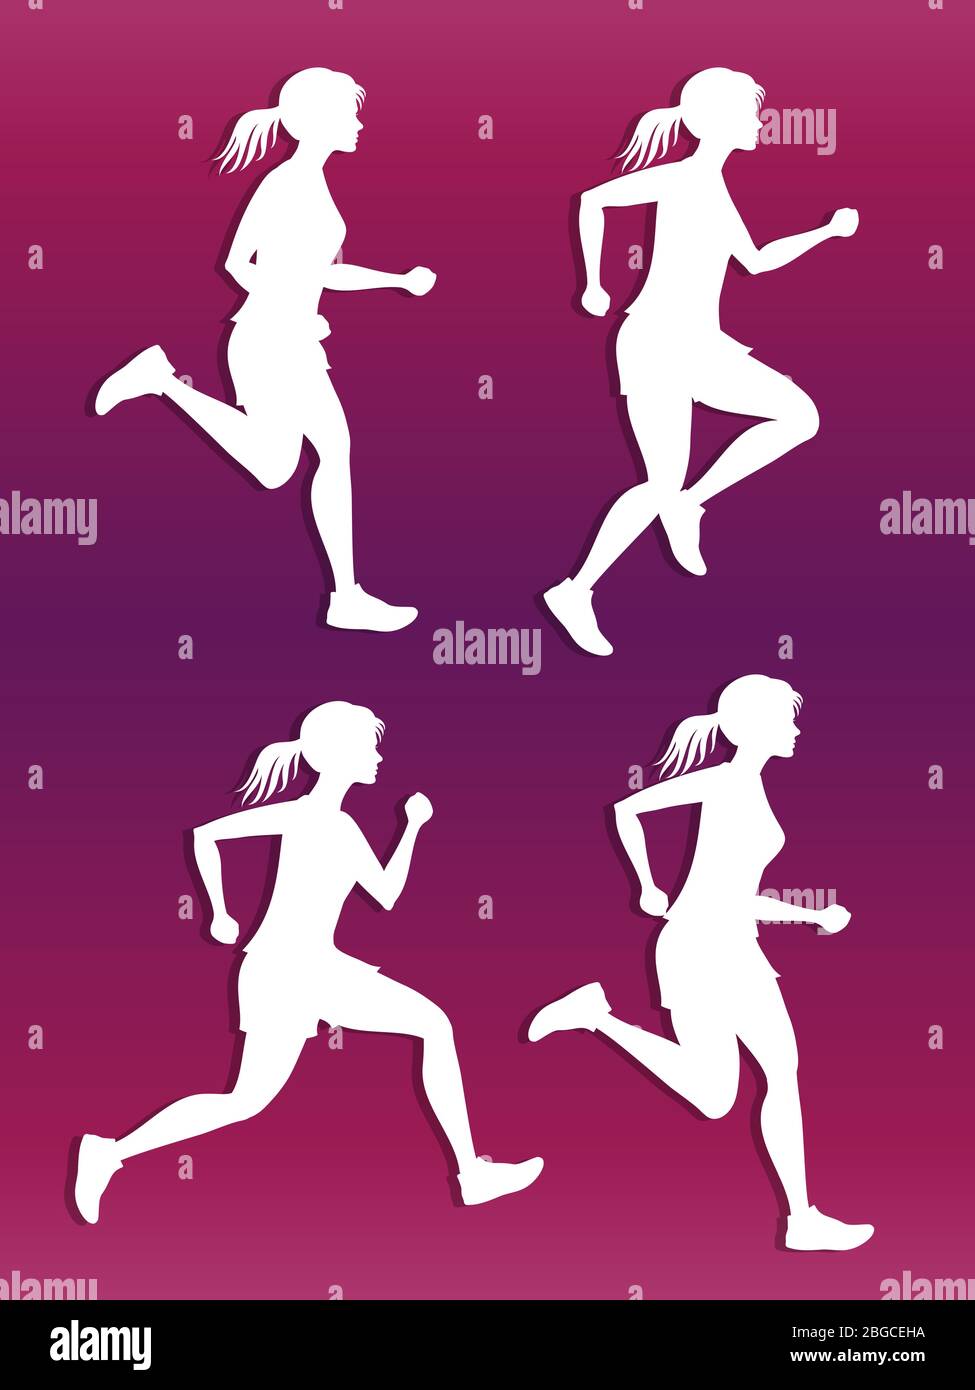 White female running silhouette vector set. Sport and fitness illustration Stock Vector